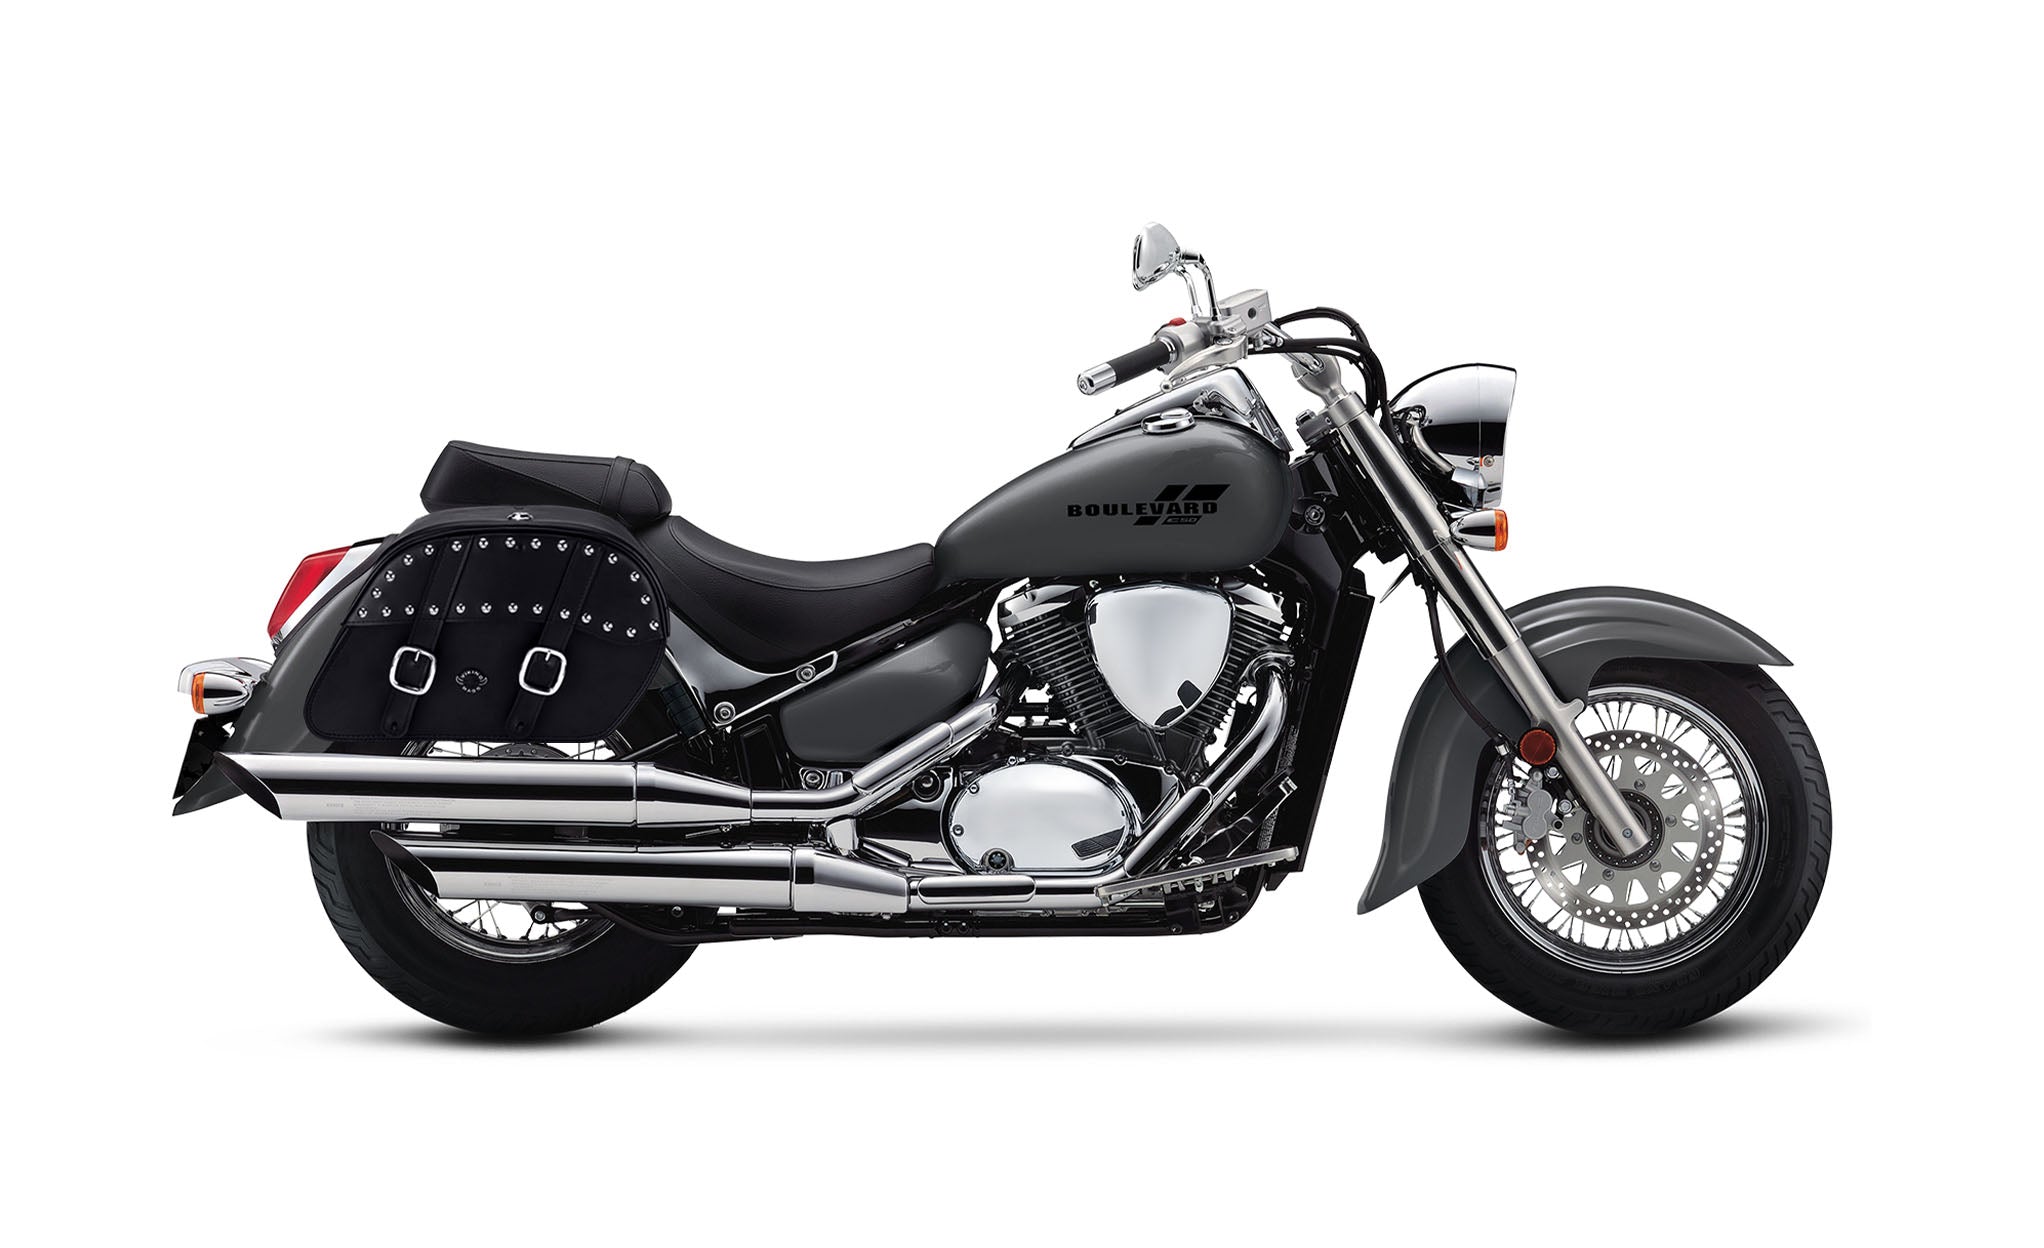 Viking Skarner Large Suzuki Boulevard C50 Vl800 Leather Studded Motorcycle Saddlebags on Bike Photo @expand